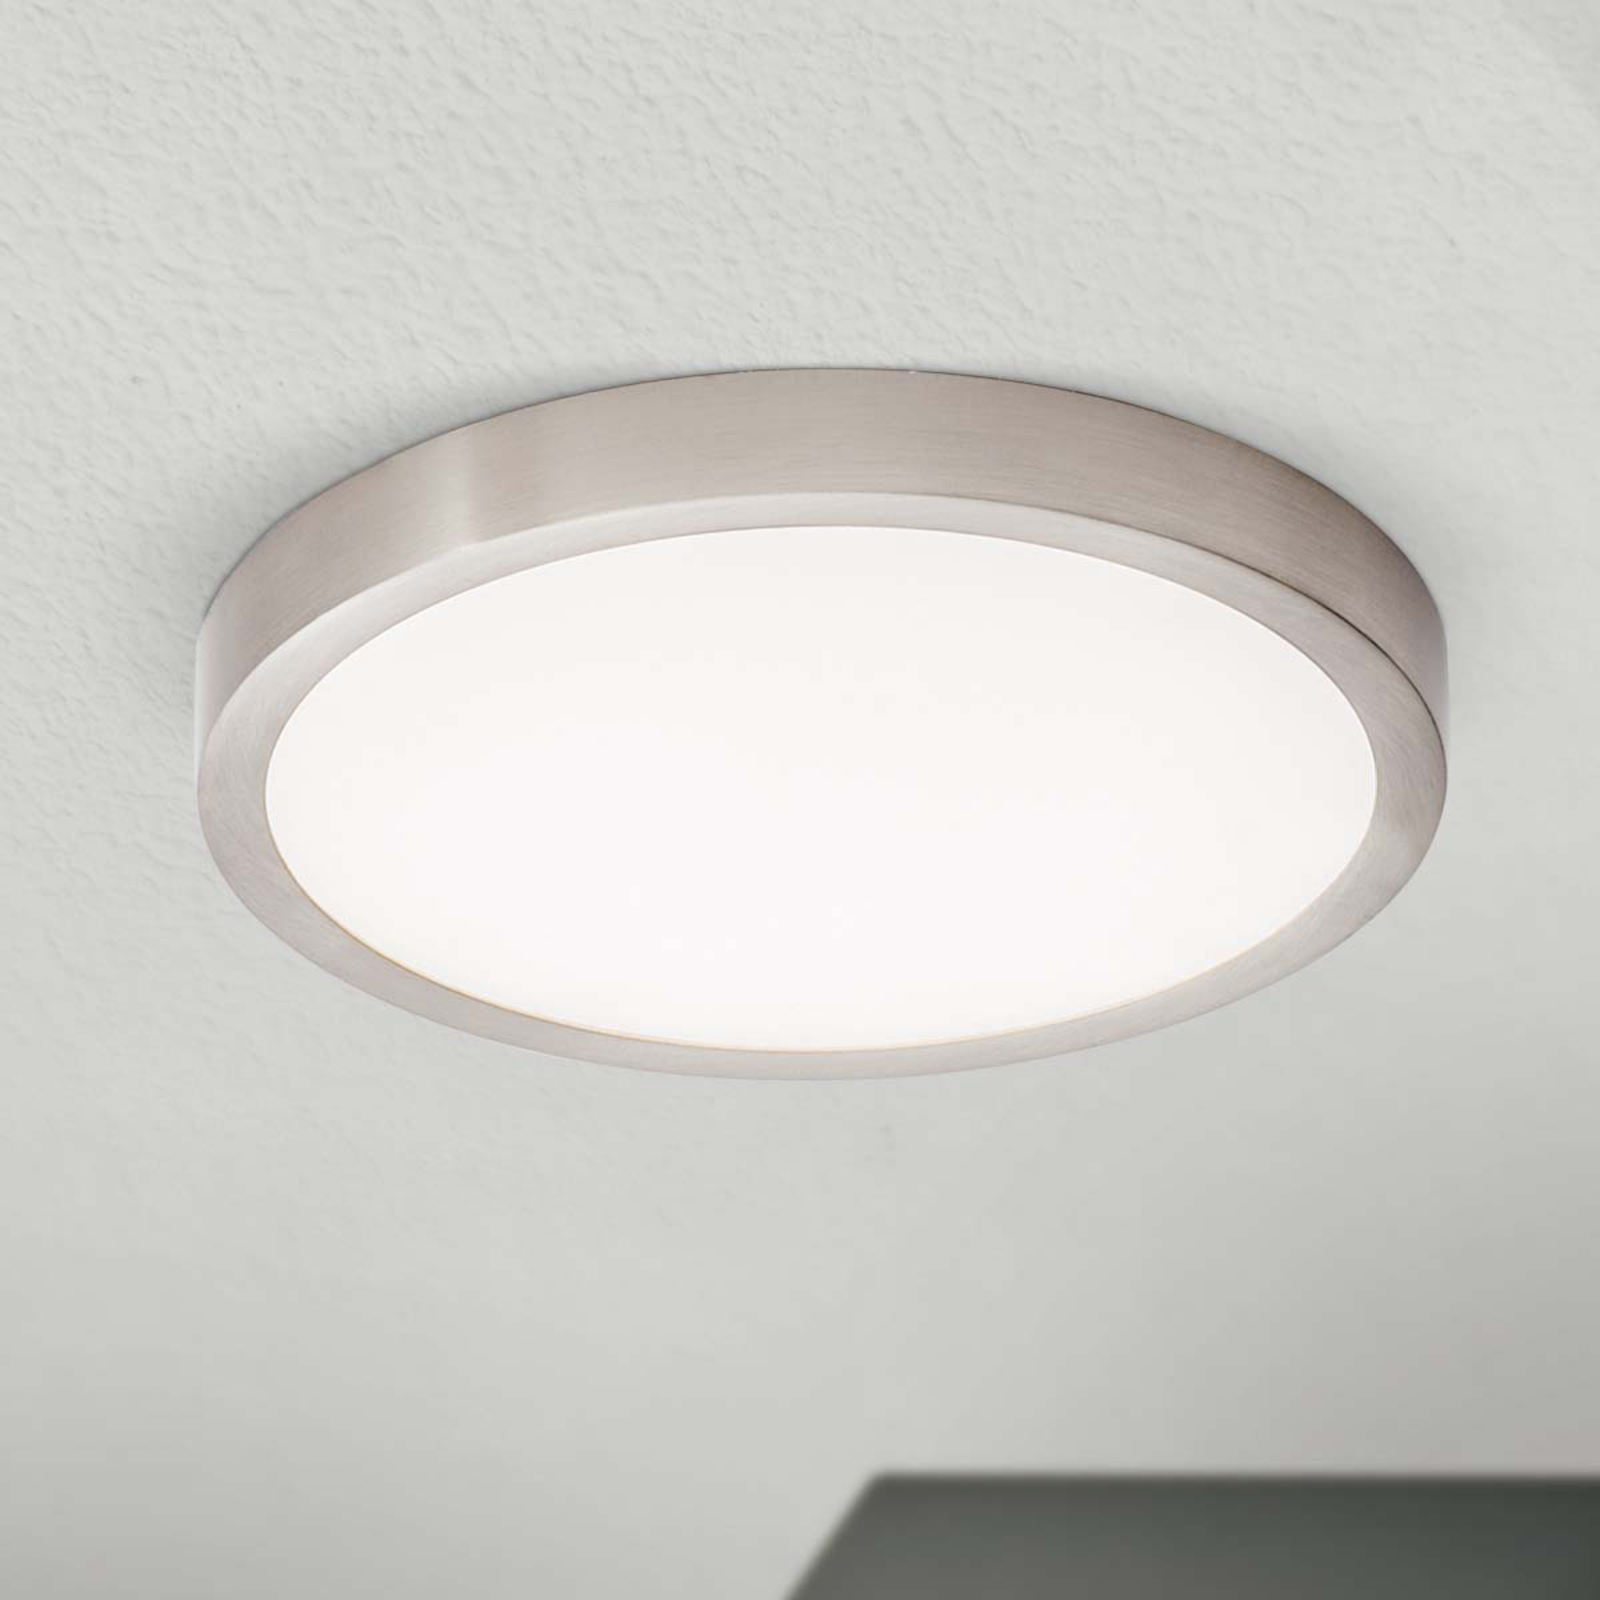 Stropné LED svietidlo Vika okrúhla, titán, Ø 23cm